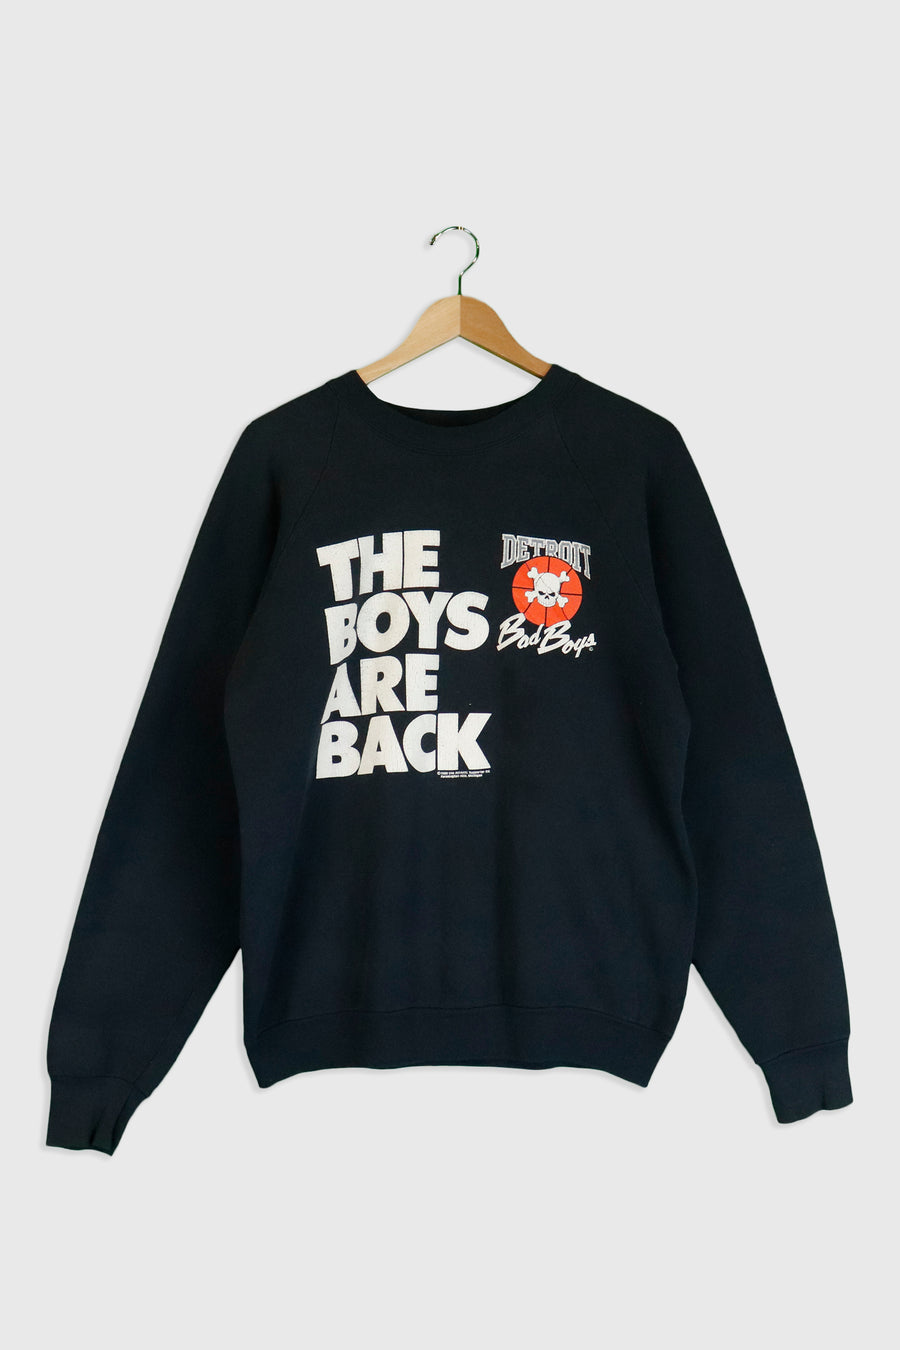 Vintage NBA Detroit Bad Boys 'The Boys Are Back' Long Sweatshirt Sz XL